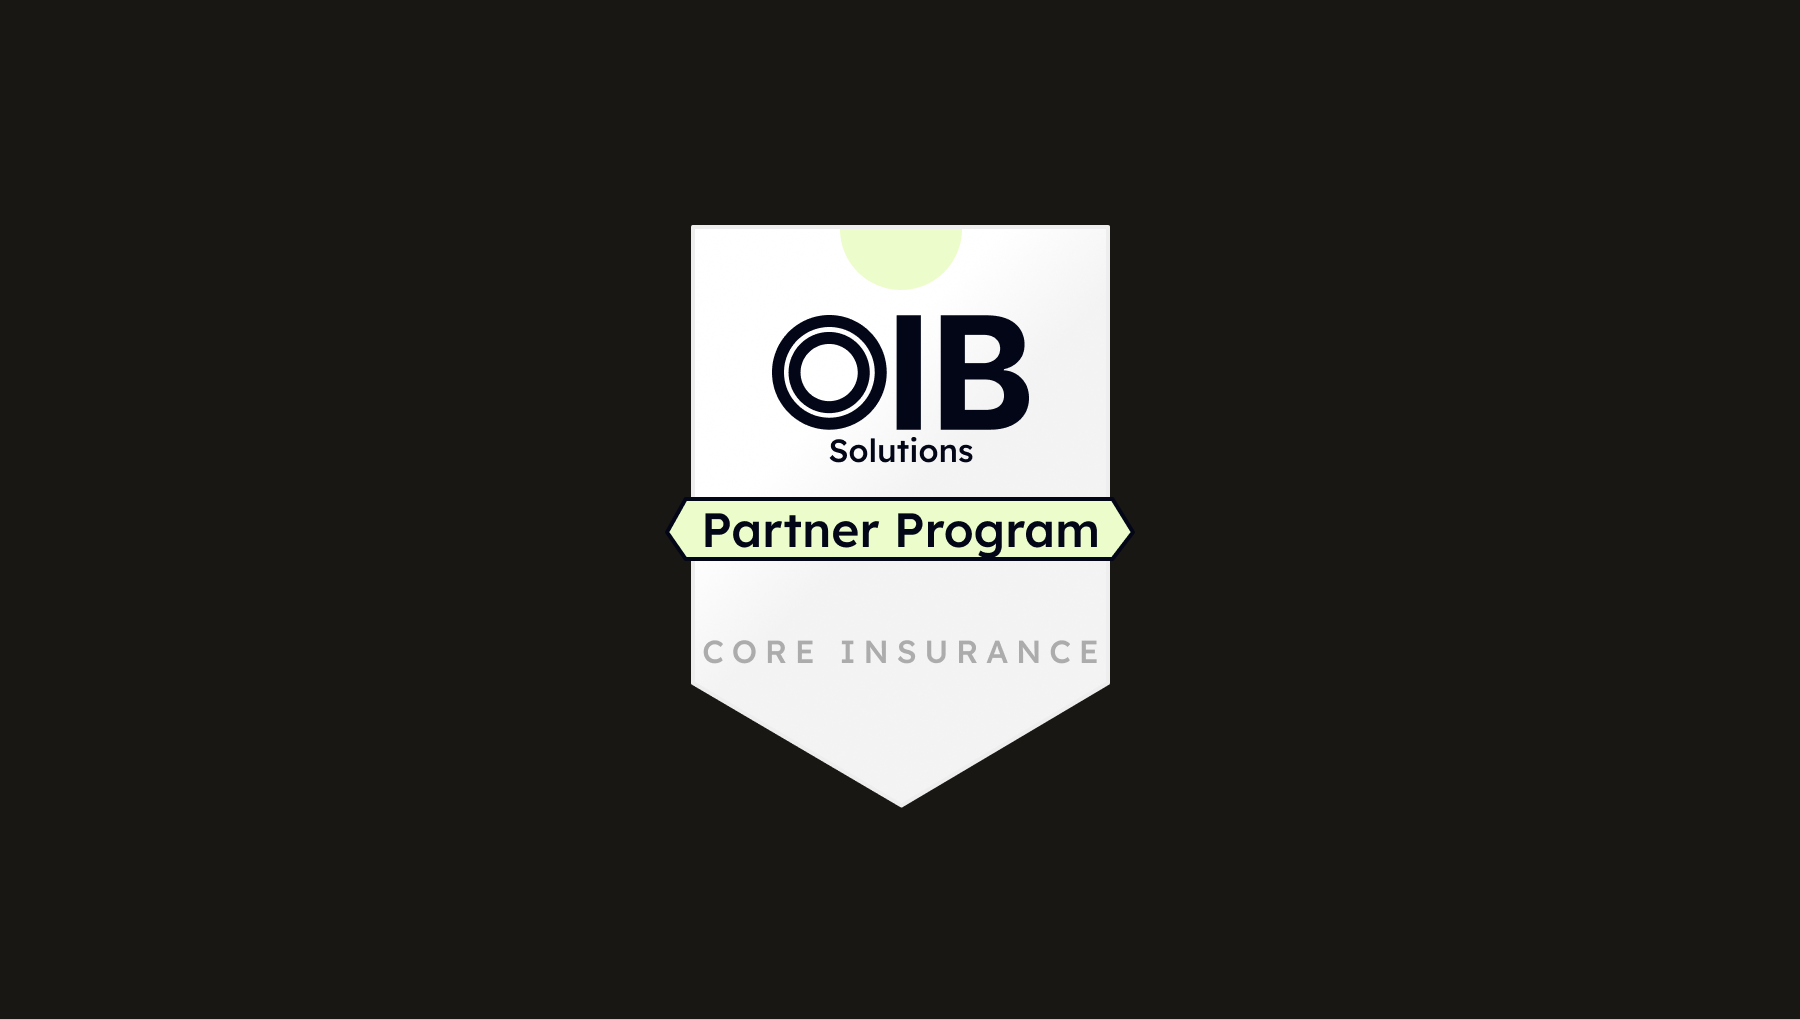 oib solutions partner program